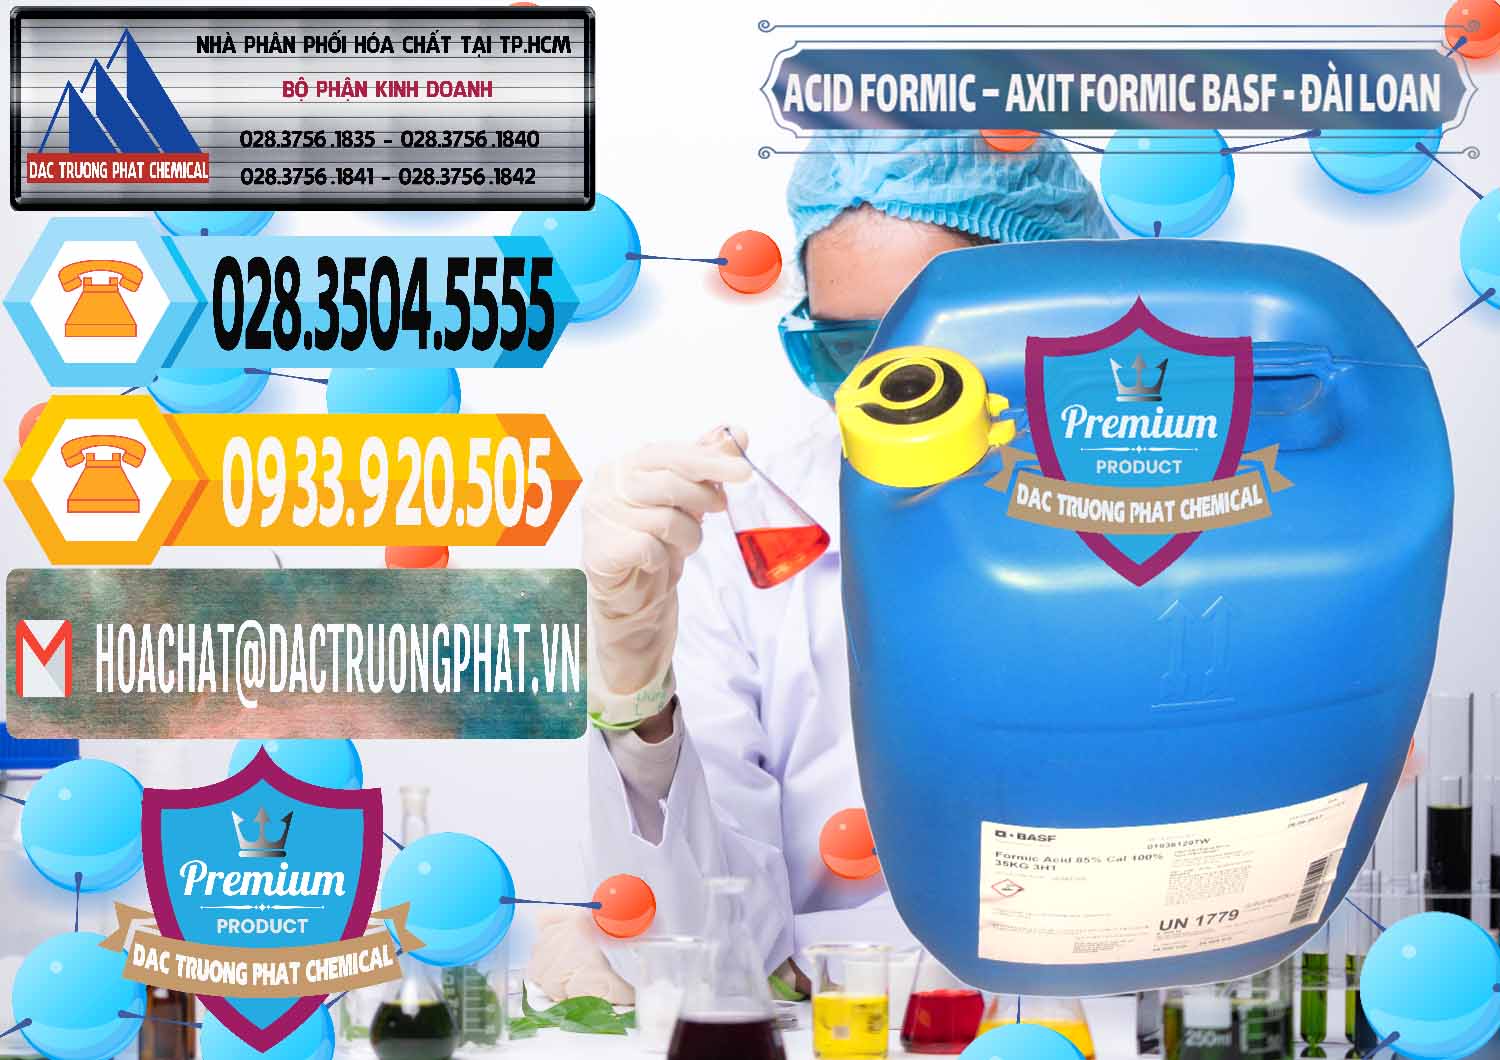 Nơi chuyên bán ( cung ứng ) Acid Formic - Axit Formic 85% BASF Đài Loan Taiwan - 0027 - Bán _ phân phối hóa chất tại TP.HCM - hoachattayrua.net